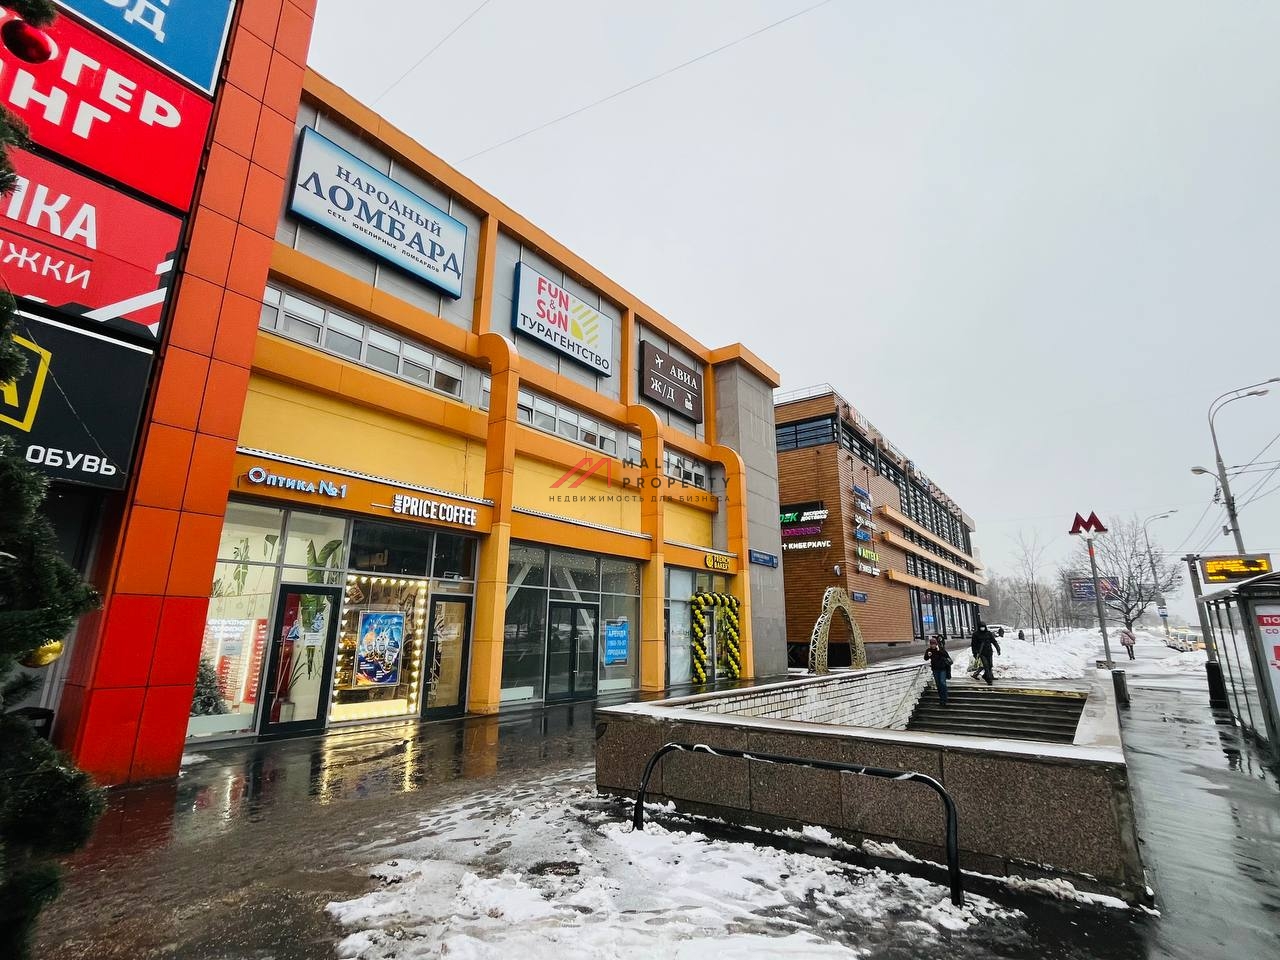 Продажа коммерческого помещения на выходе из метро Беляево